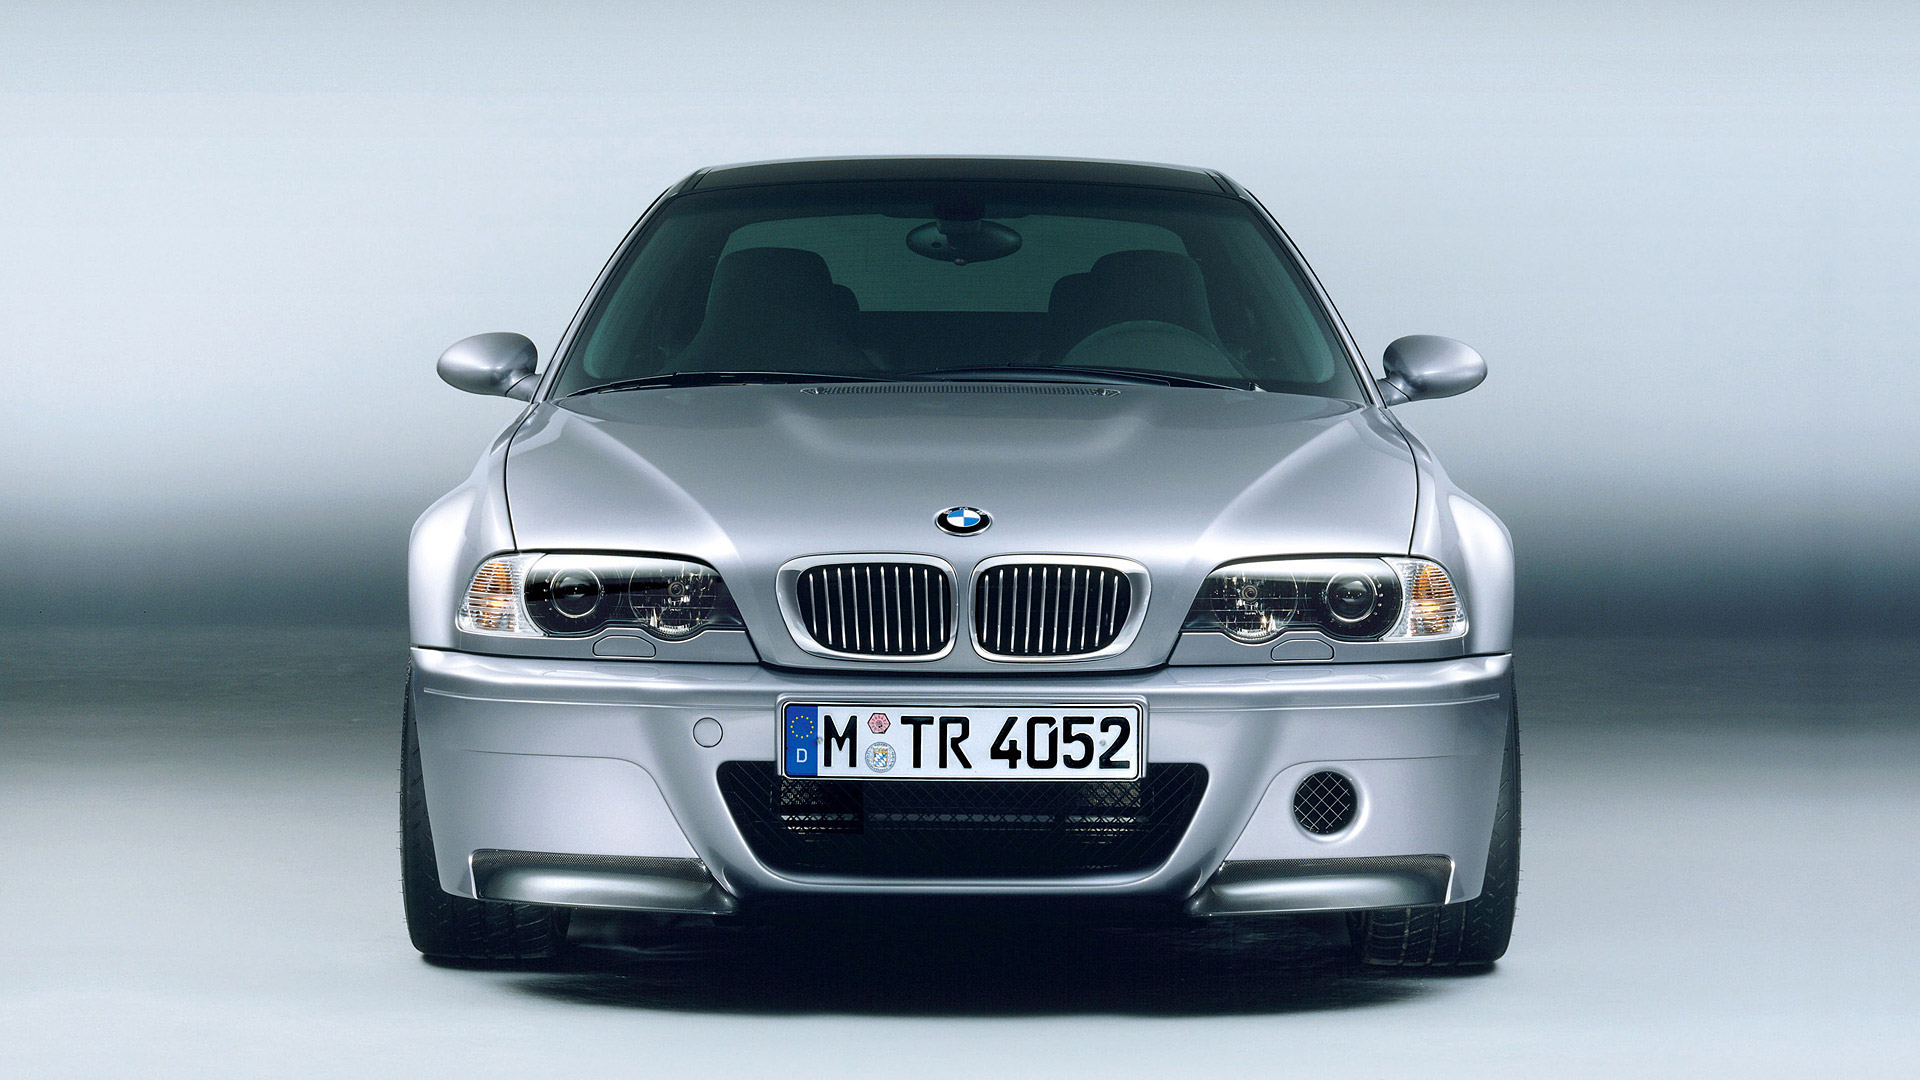  2003 BMW M3 CSL Wallpaper.